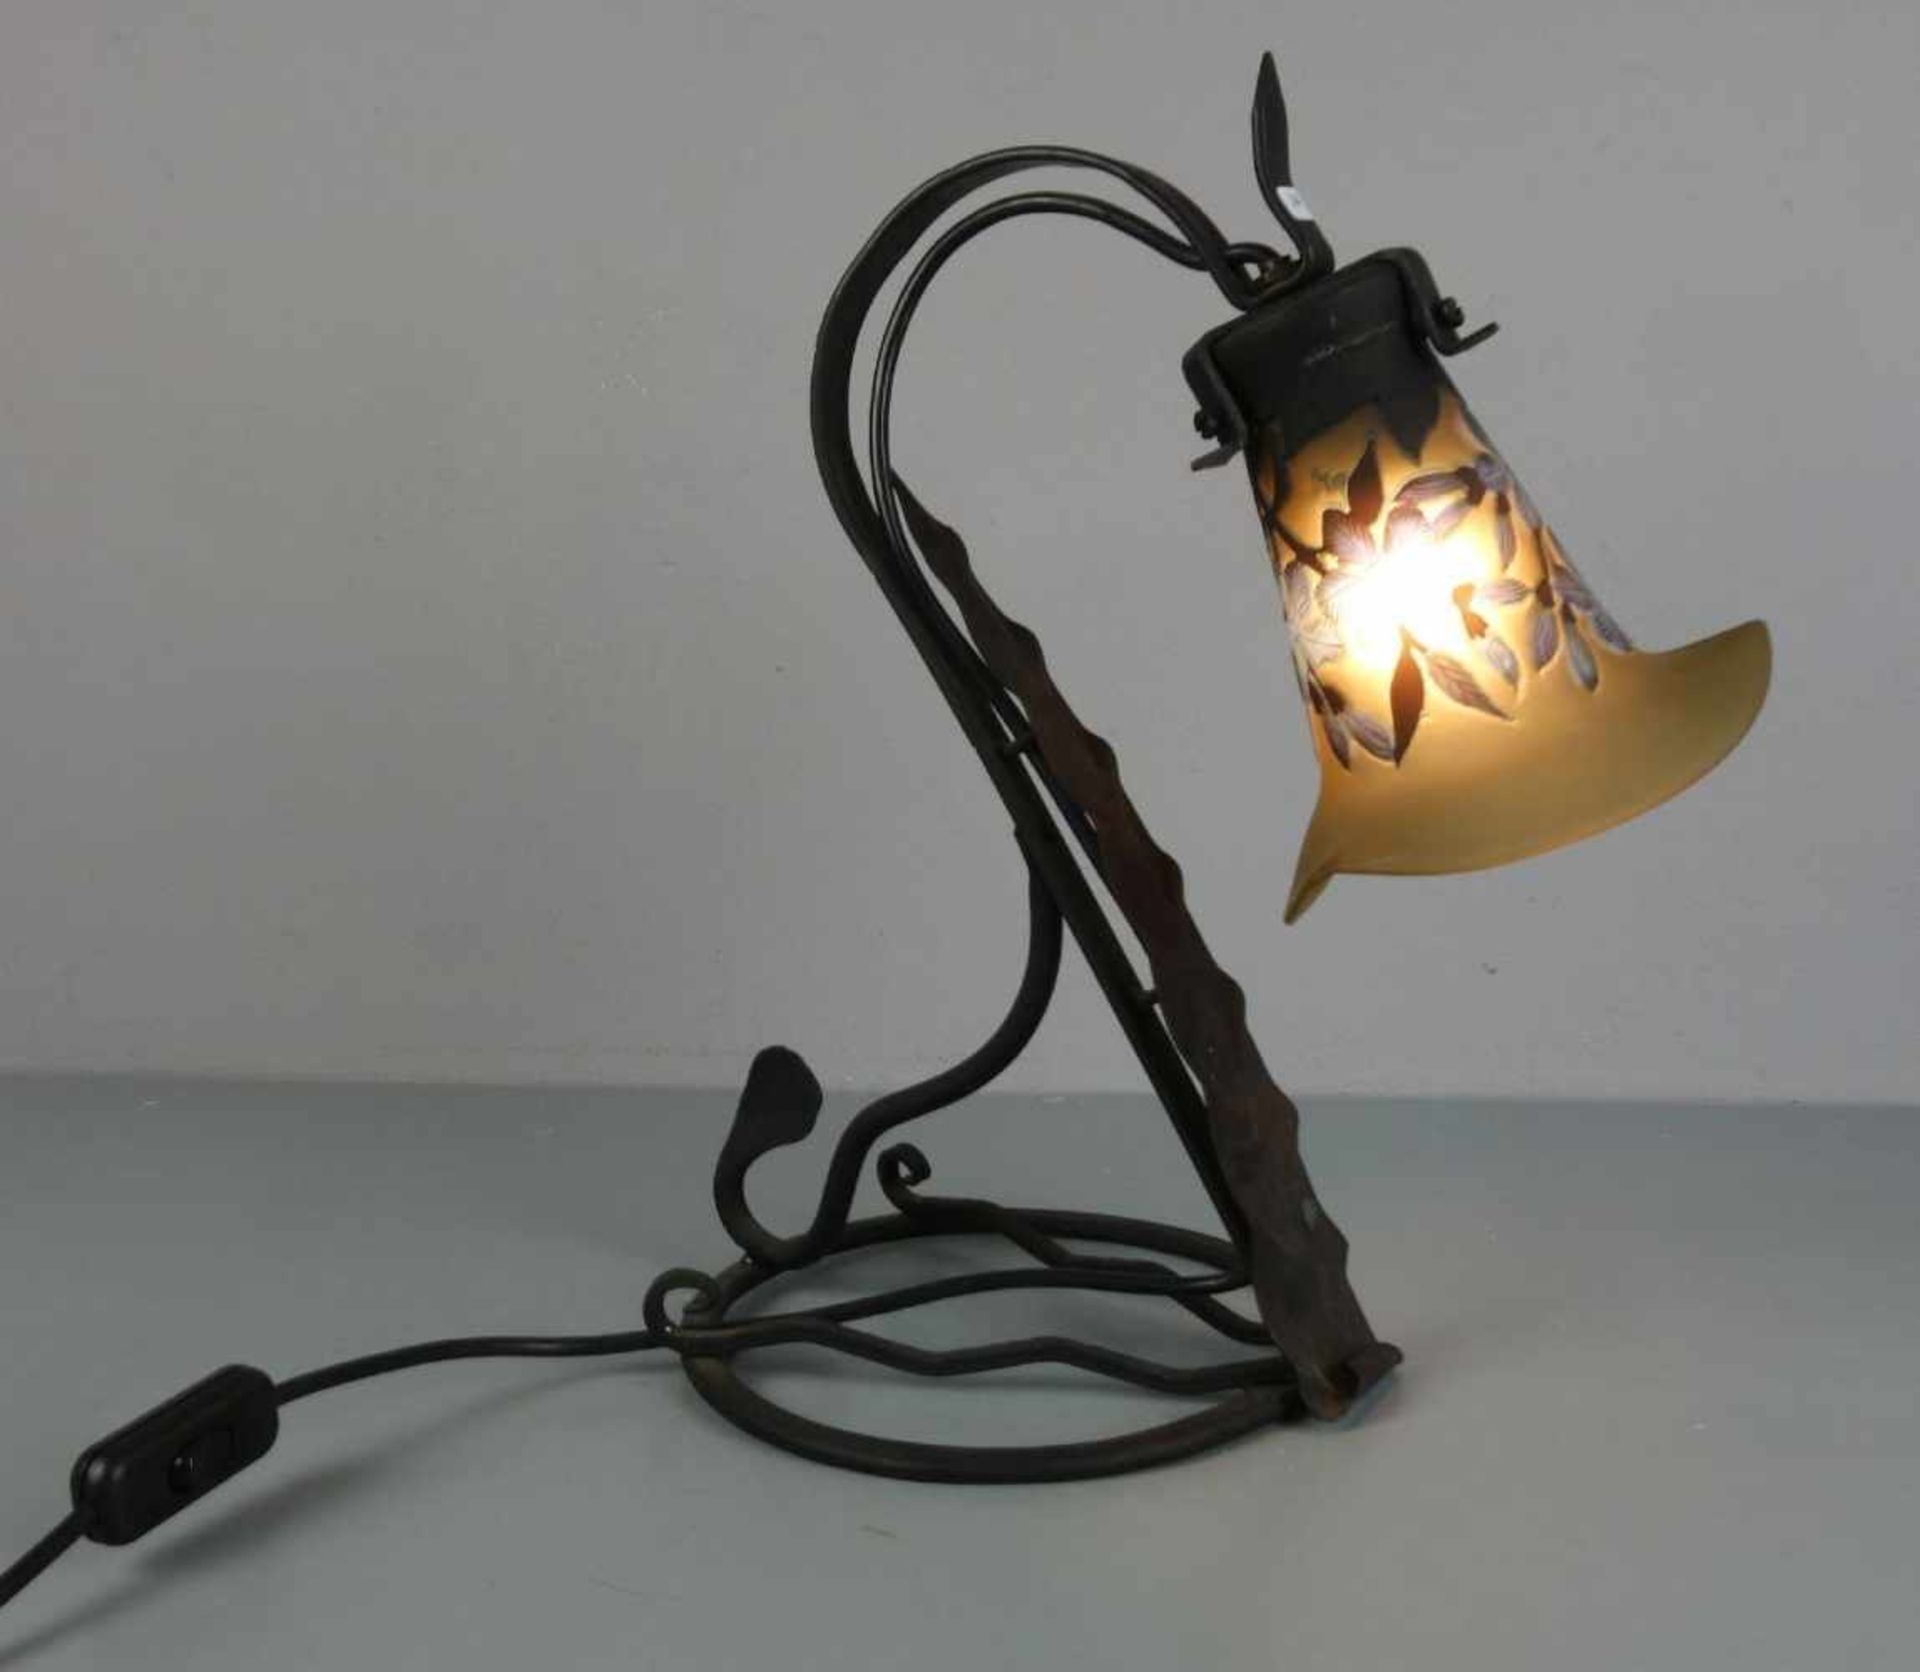 LAMPE / TISCHLAMPE in der Anmutung des Jugendstils, Eisen, einflammige Brennstelle, Glaskuppel, 2.